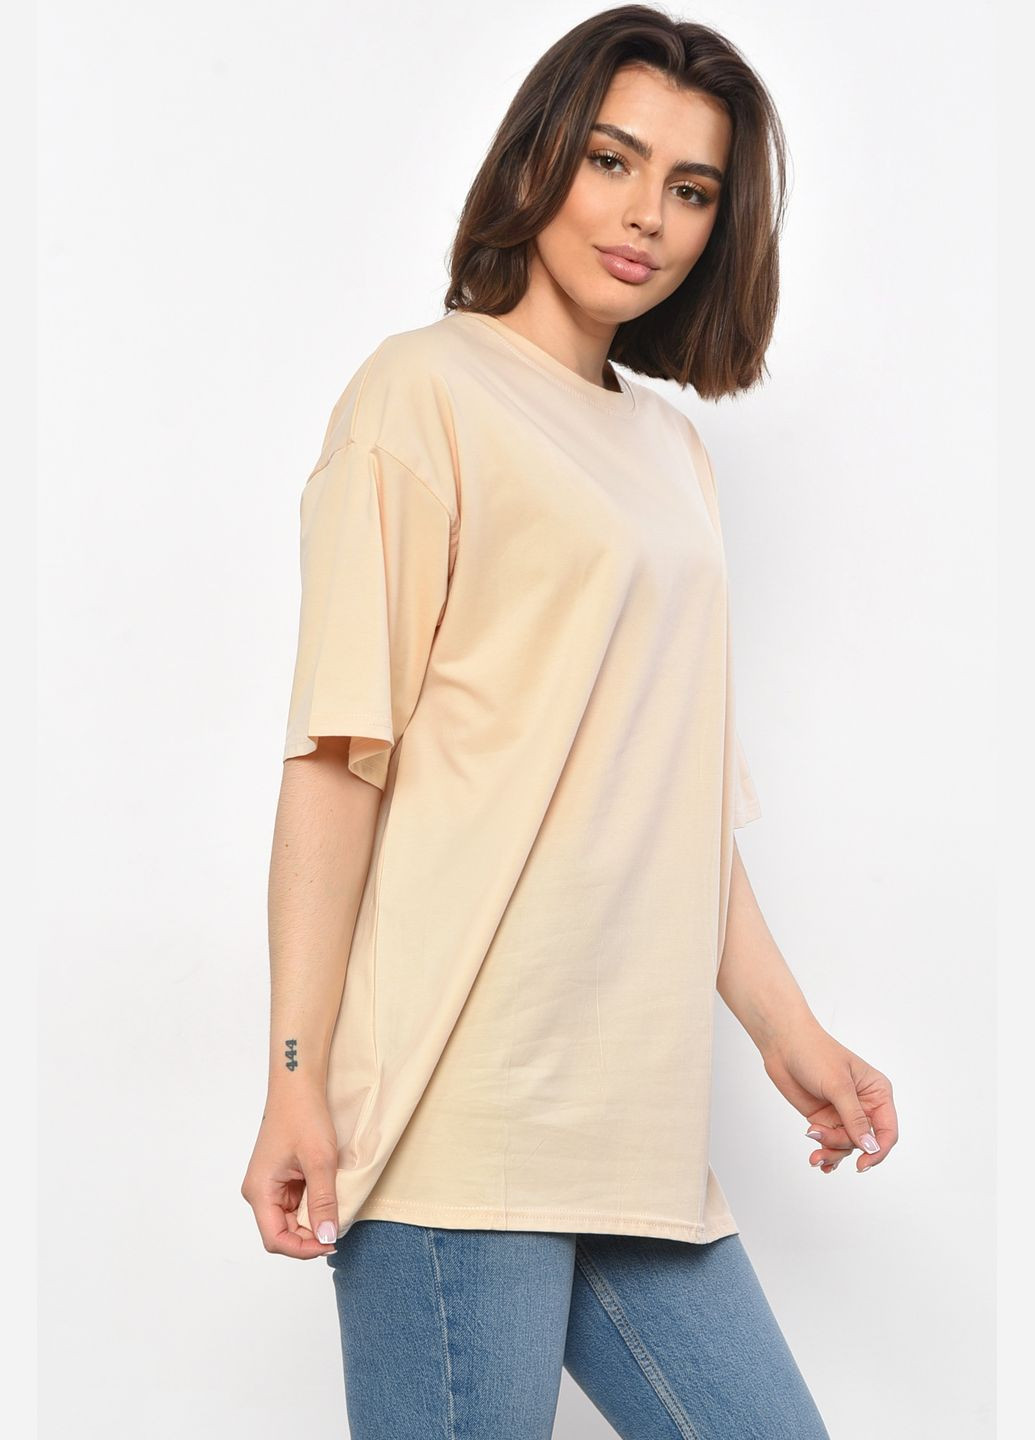 Бежевая летняя футболка женская полубатальная однотонная бежевого цвета Let's Shop